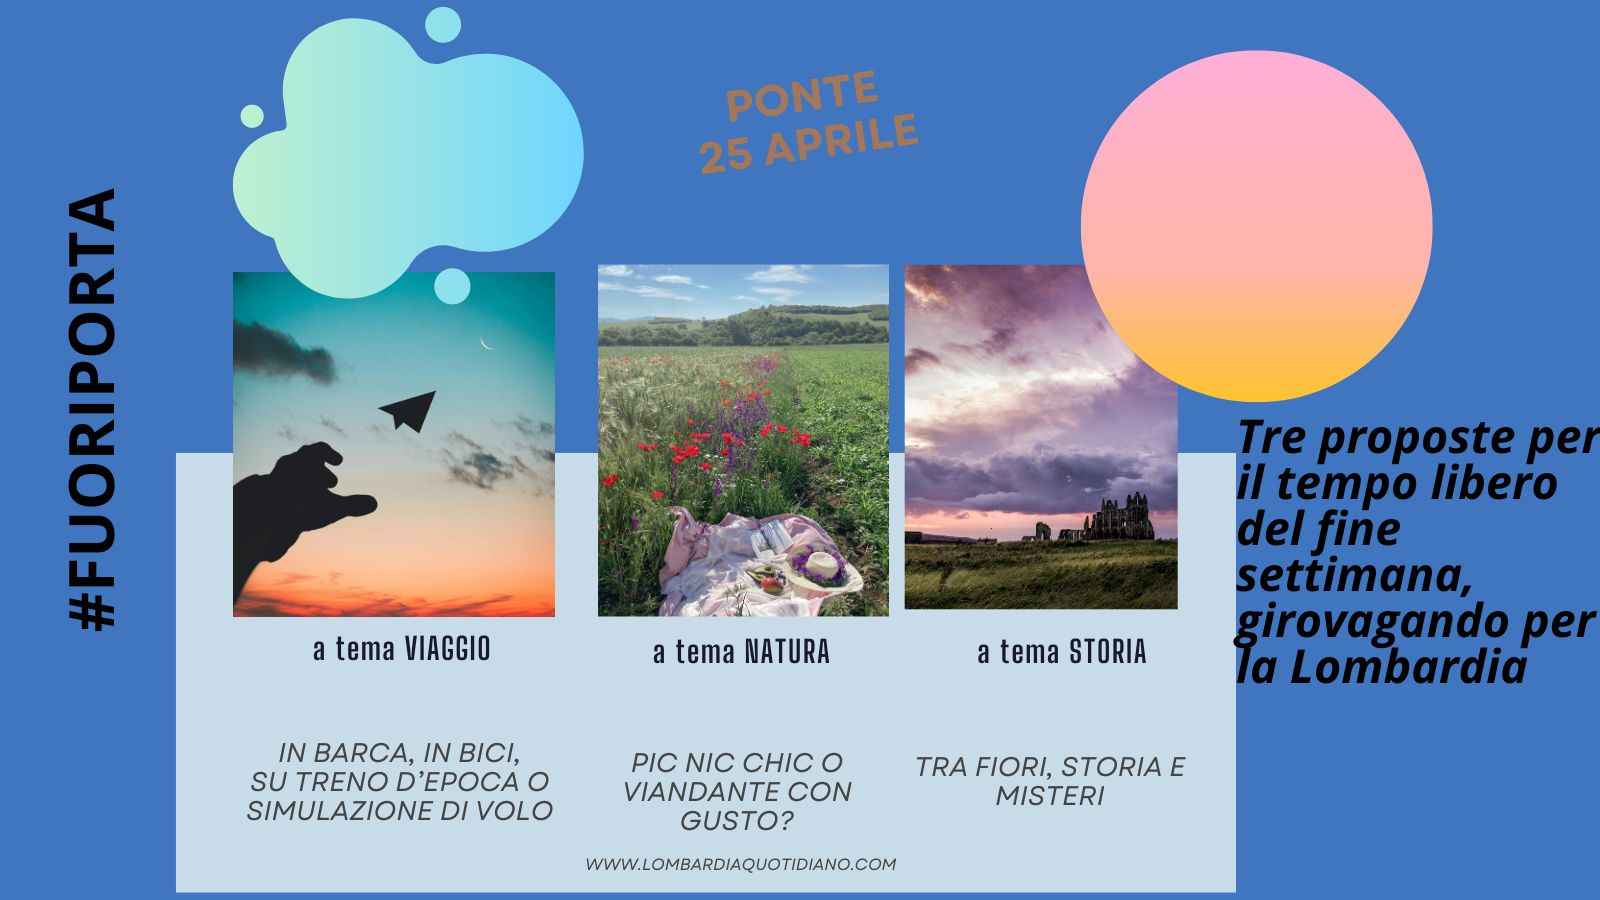 Le nostre proposte per il tempo libero del weekend del 25 aprile, girovagando per la Lombardia